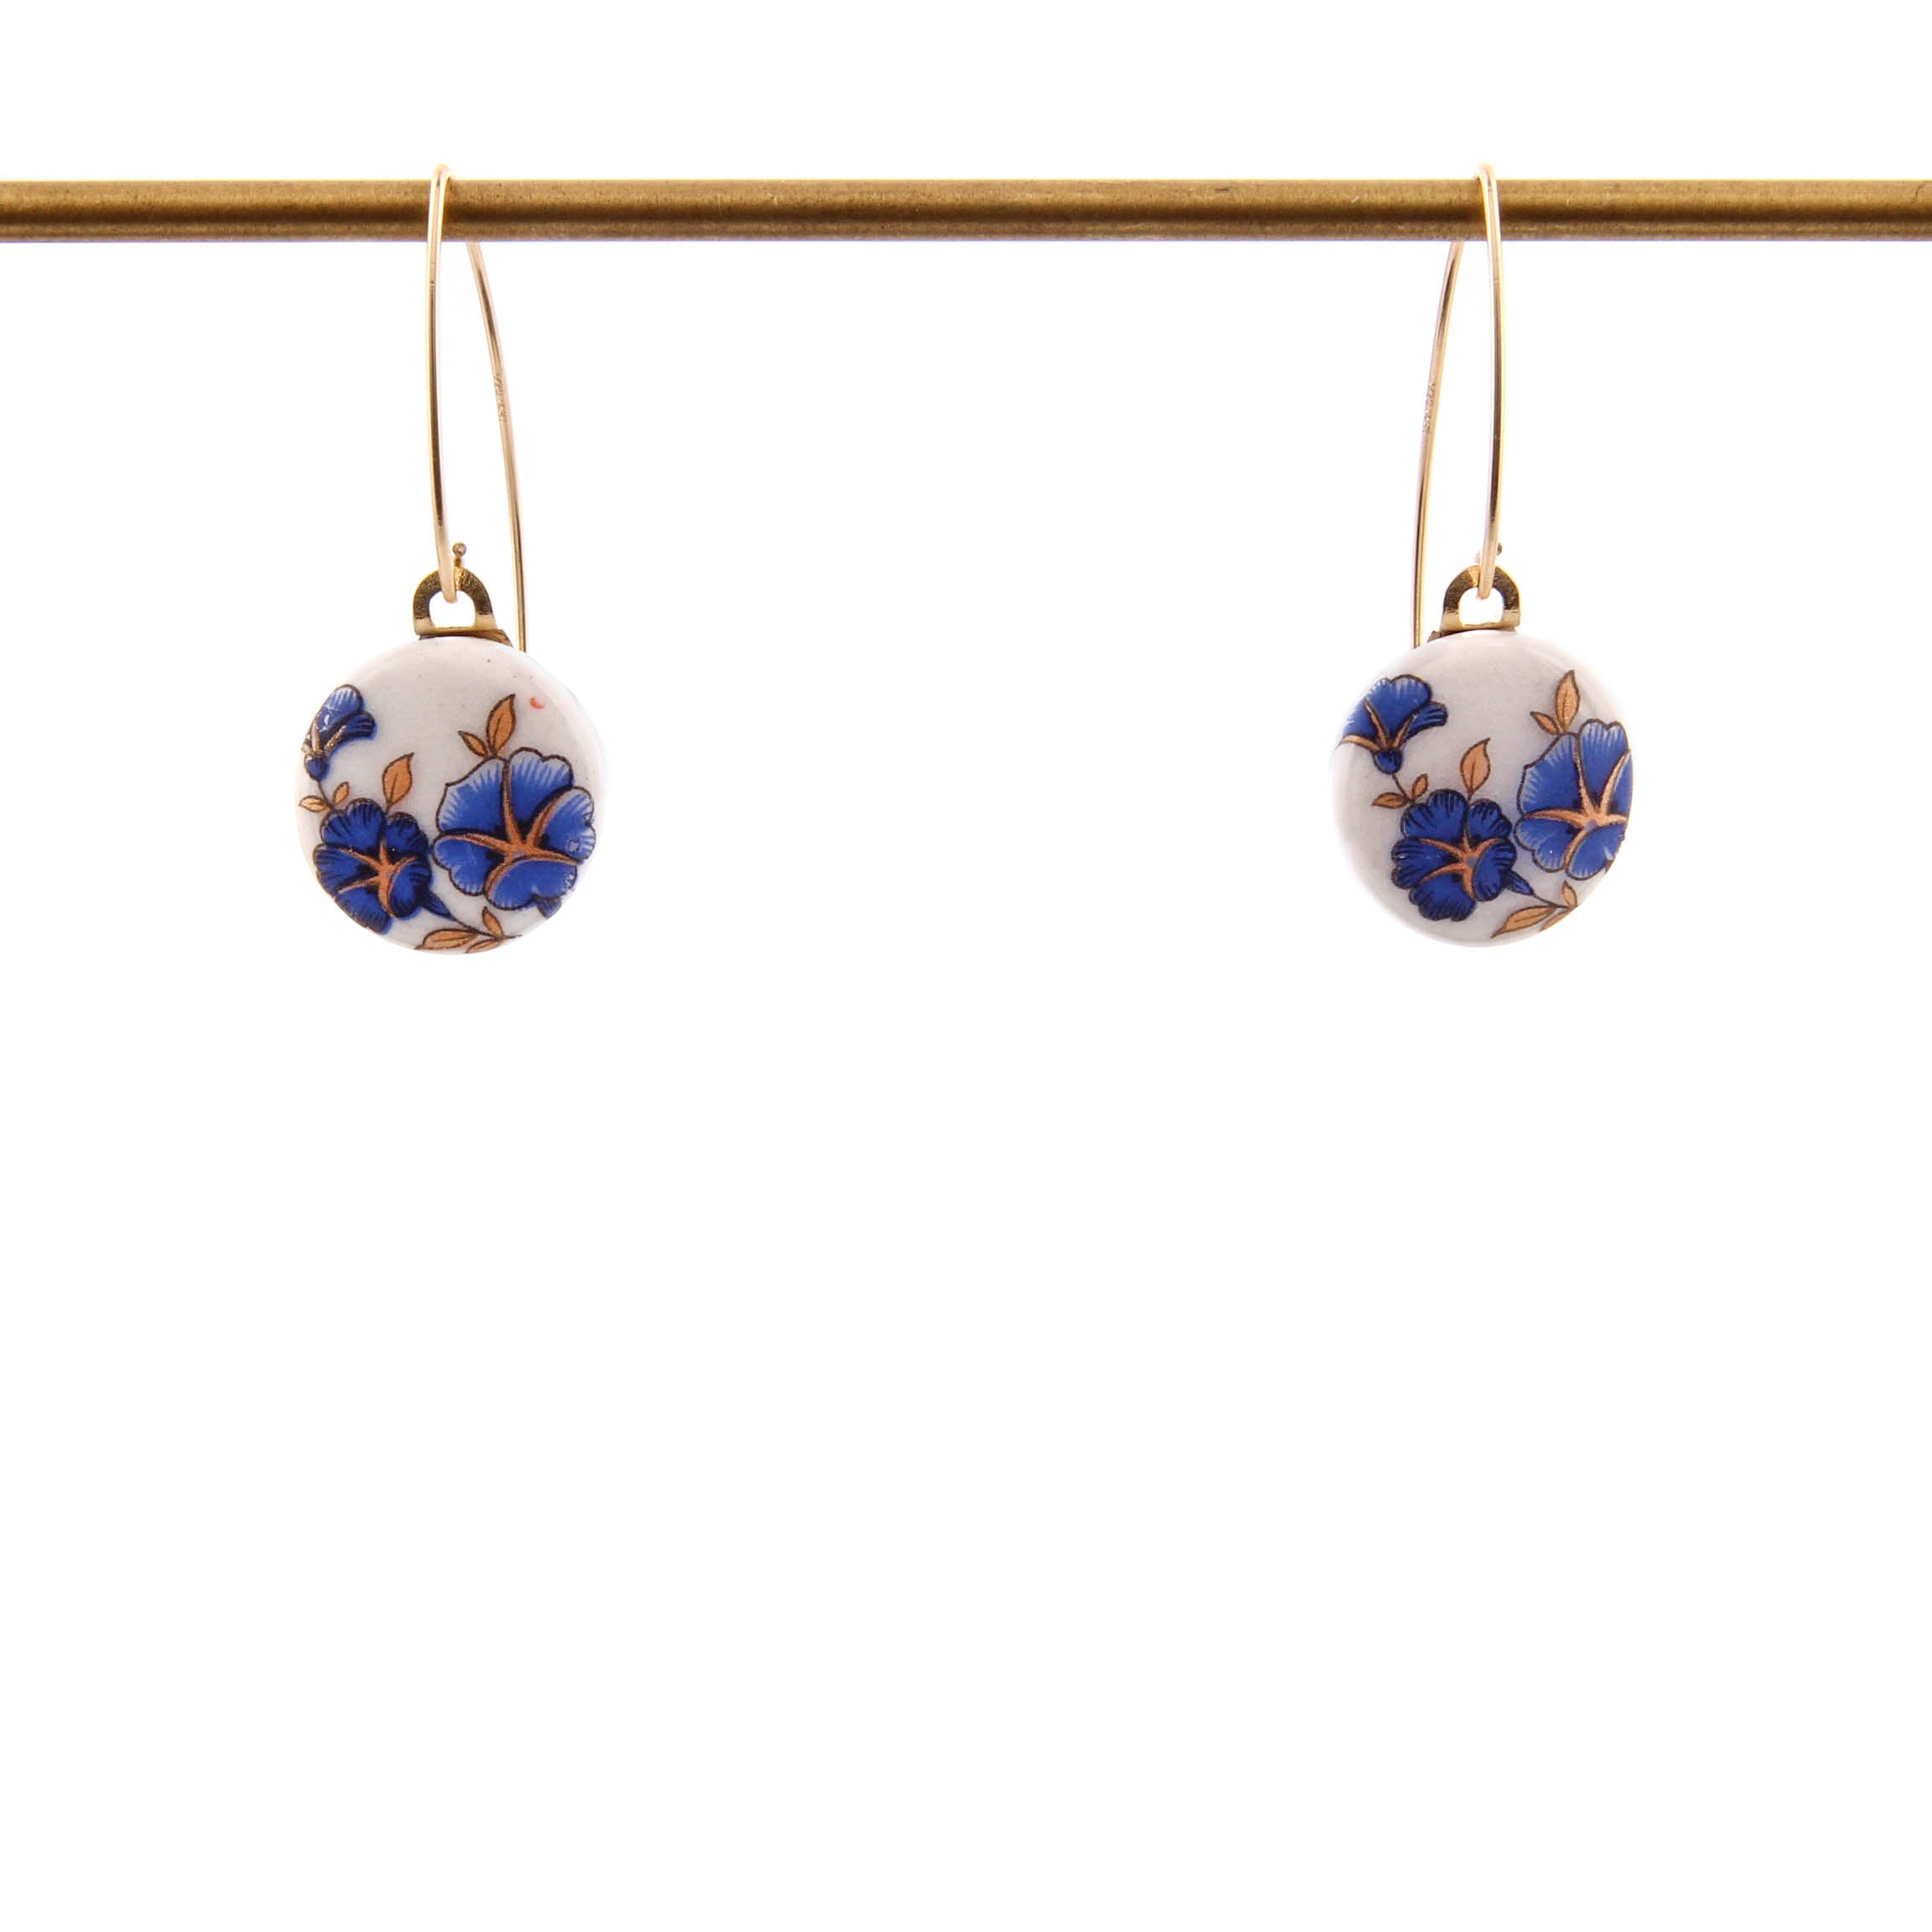 Melanie Sherman, Blue Flowers on White Porcelain Dangle Earrings